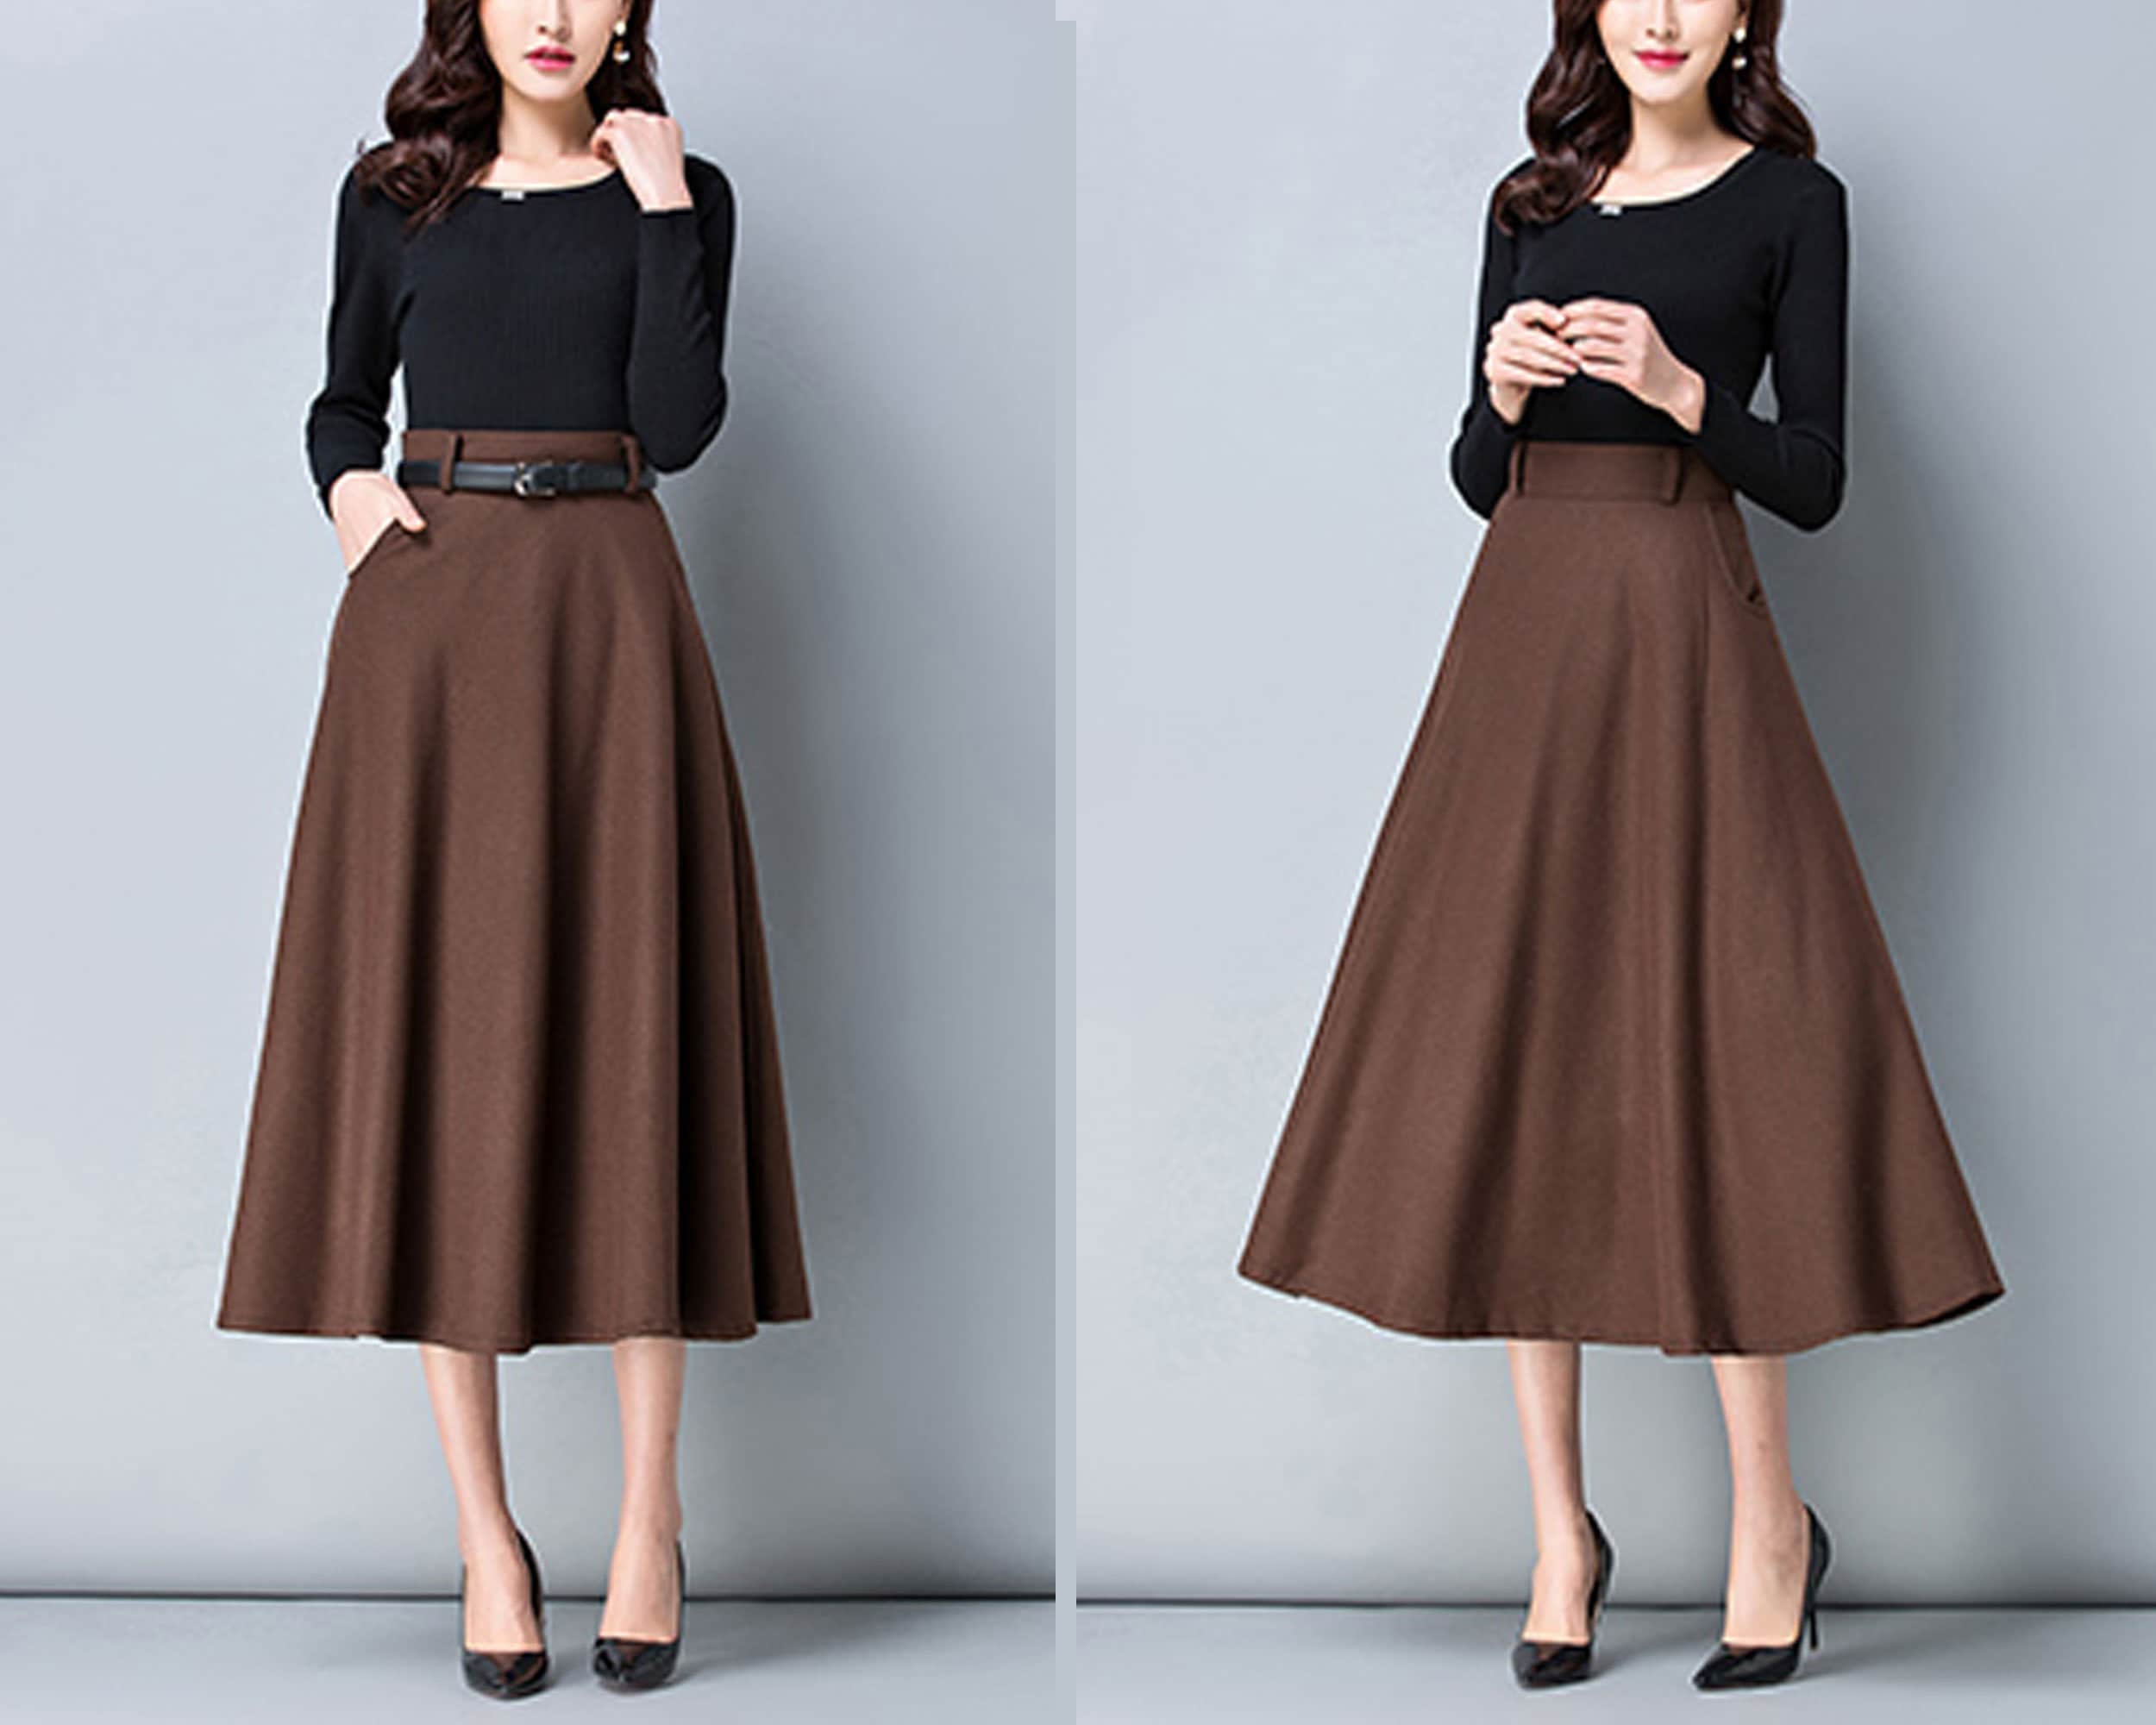 Wool Skirt, Midi Skirt, Winter Skirt, Dark Gray Skirt, Long Skirt